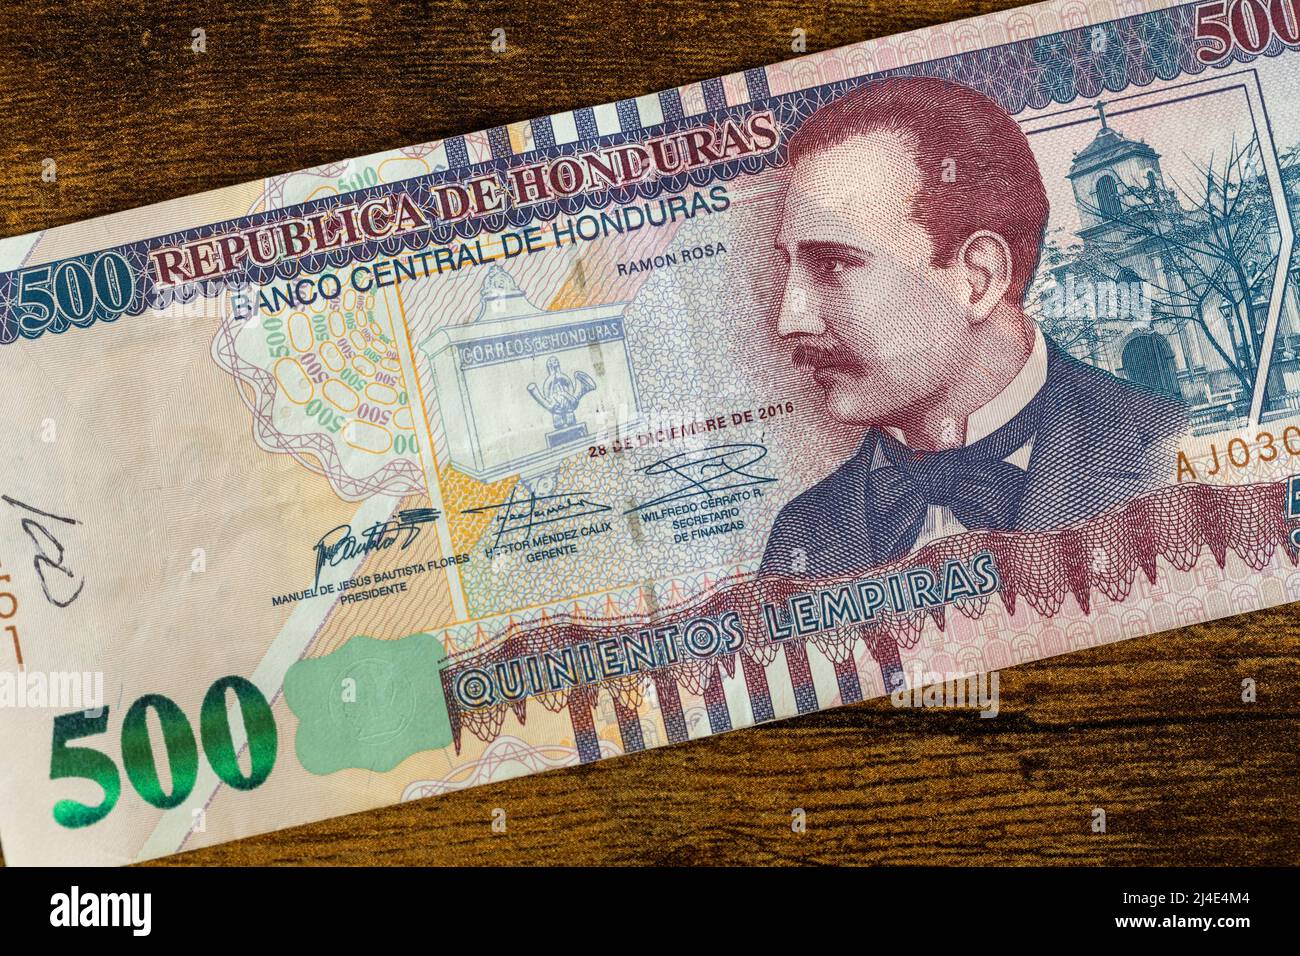 Moneda Hondurena Billete De 500 Lempira El Valor Nominal Mas Alto Del Pais 2j4e4m4 